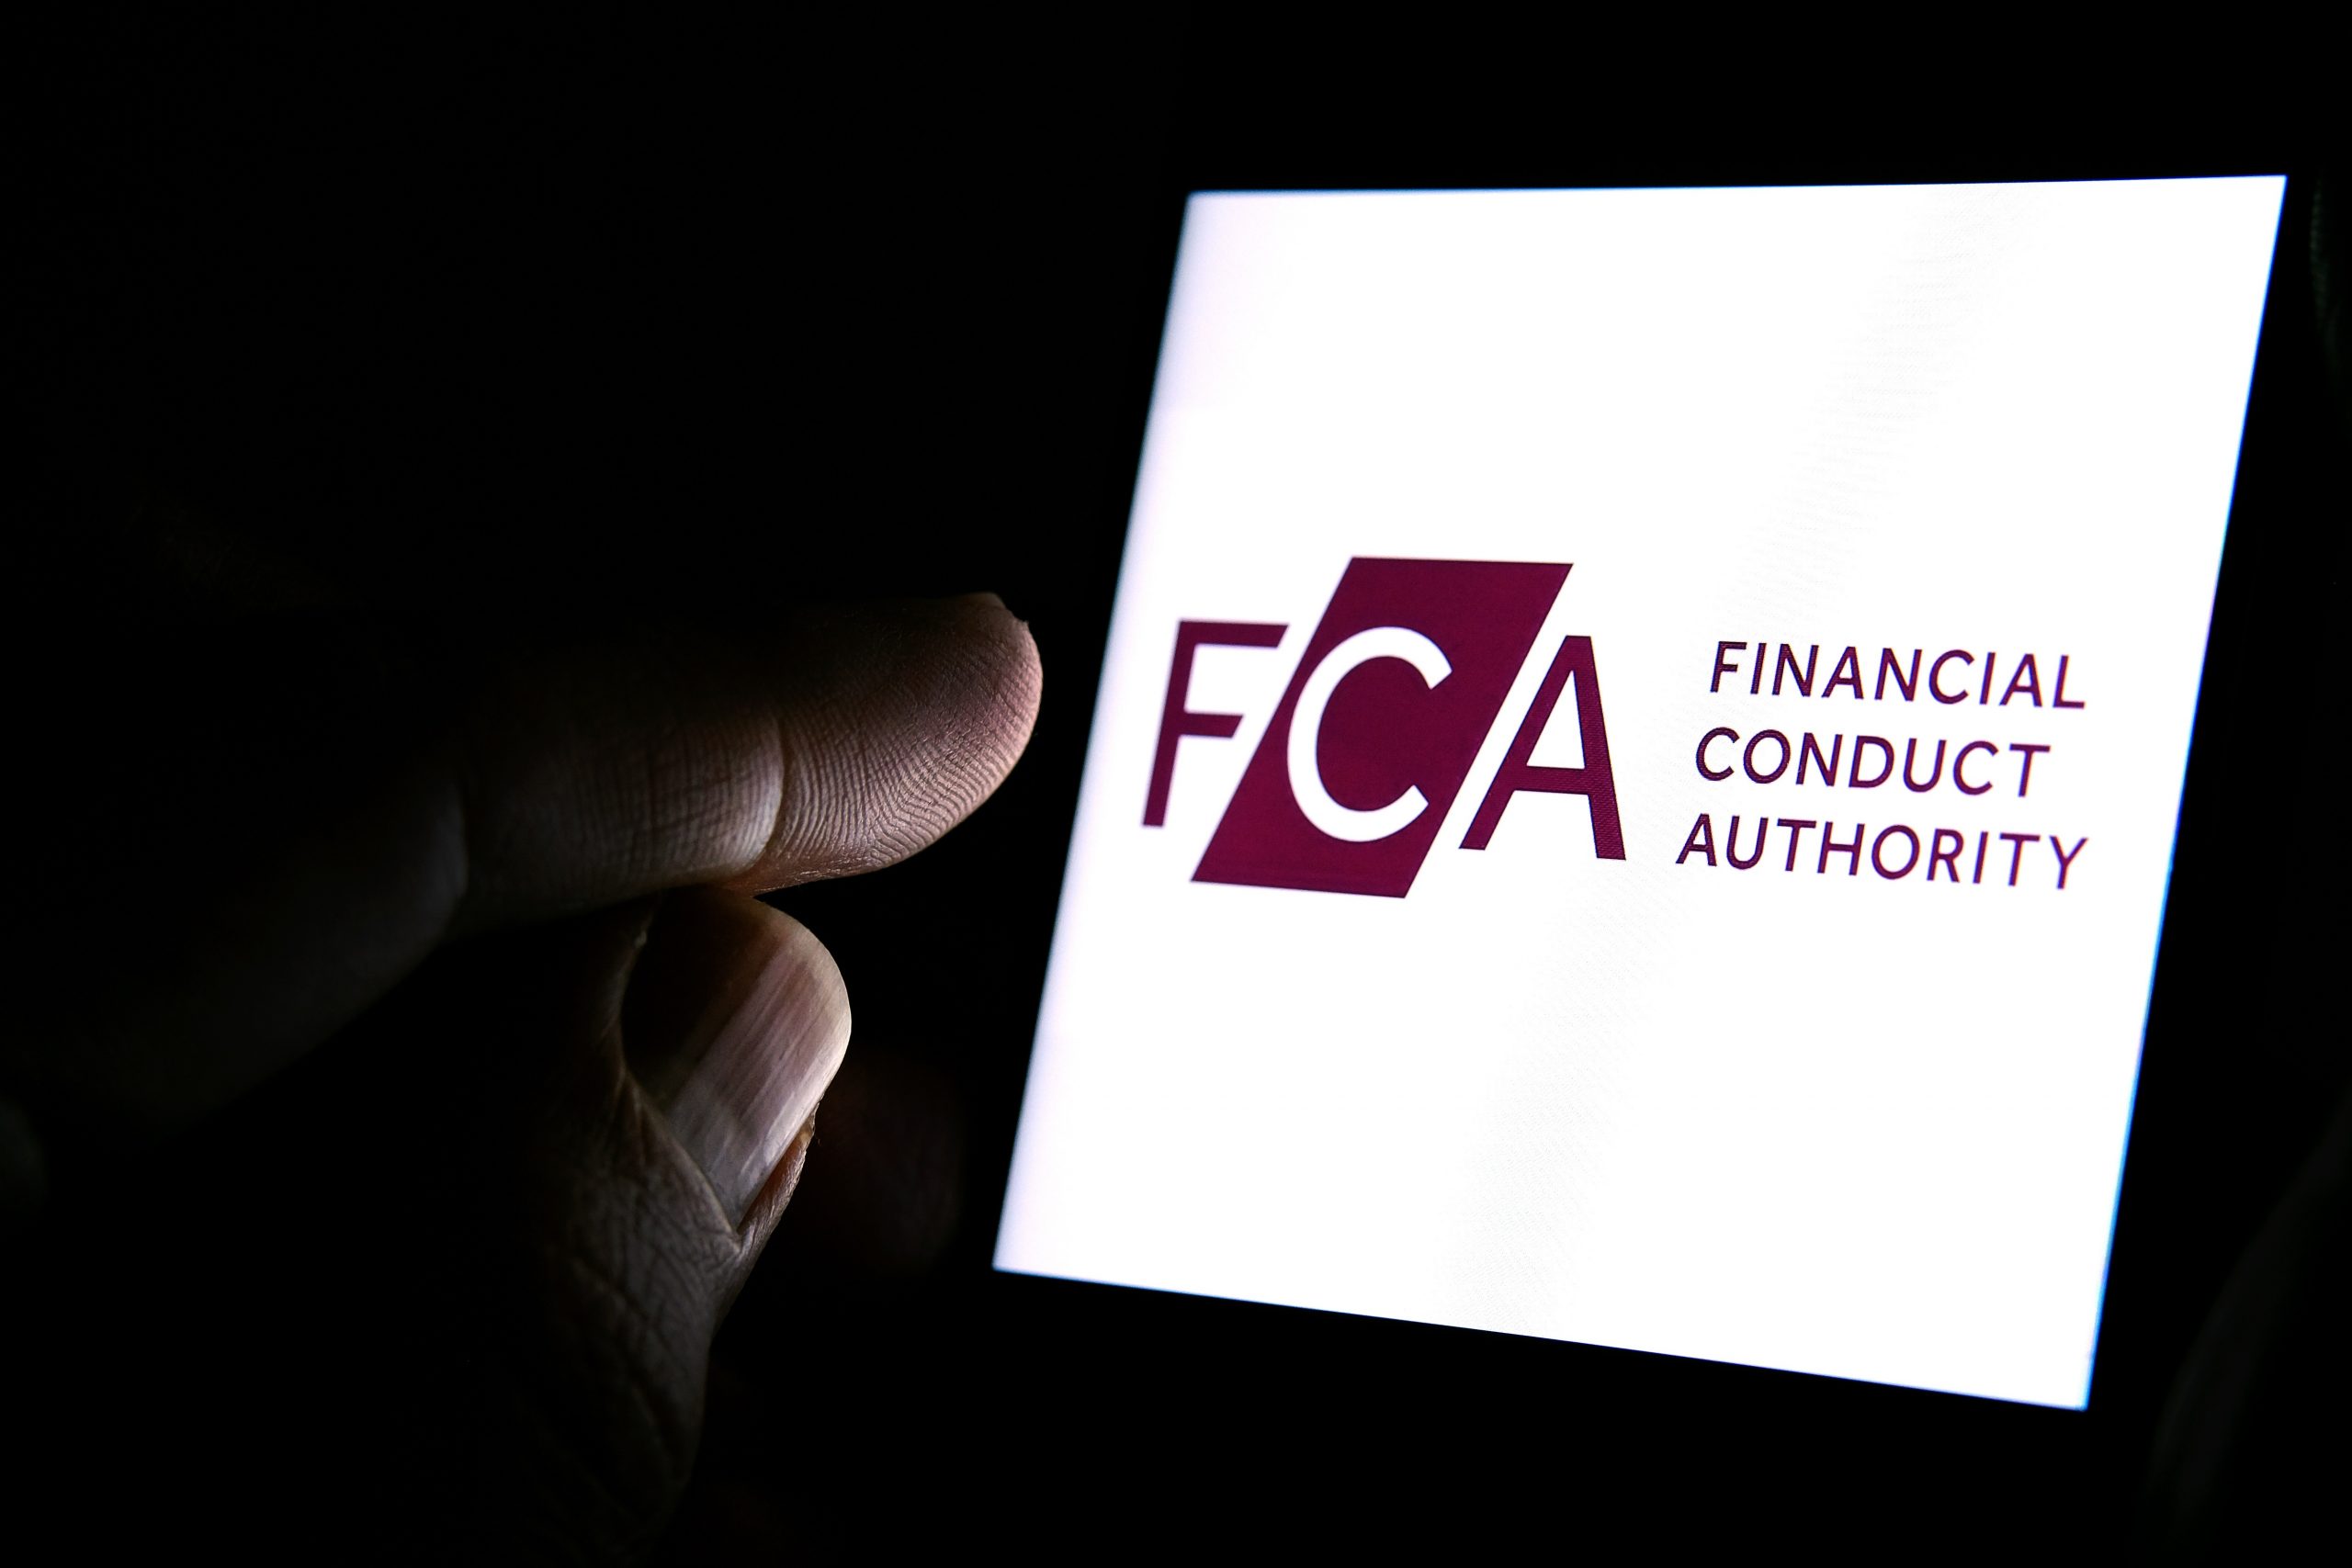 هيئة FCA تحذر ضد 26 منصة تداول واستثمار غير مشروعة